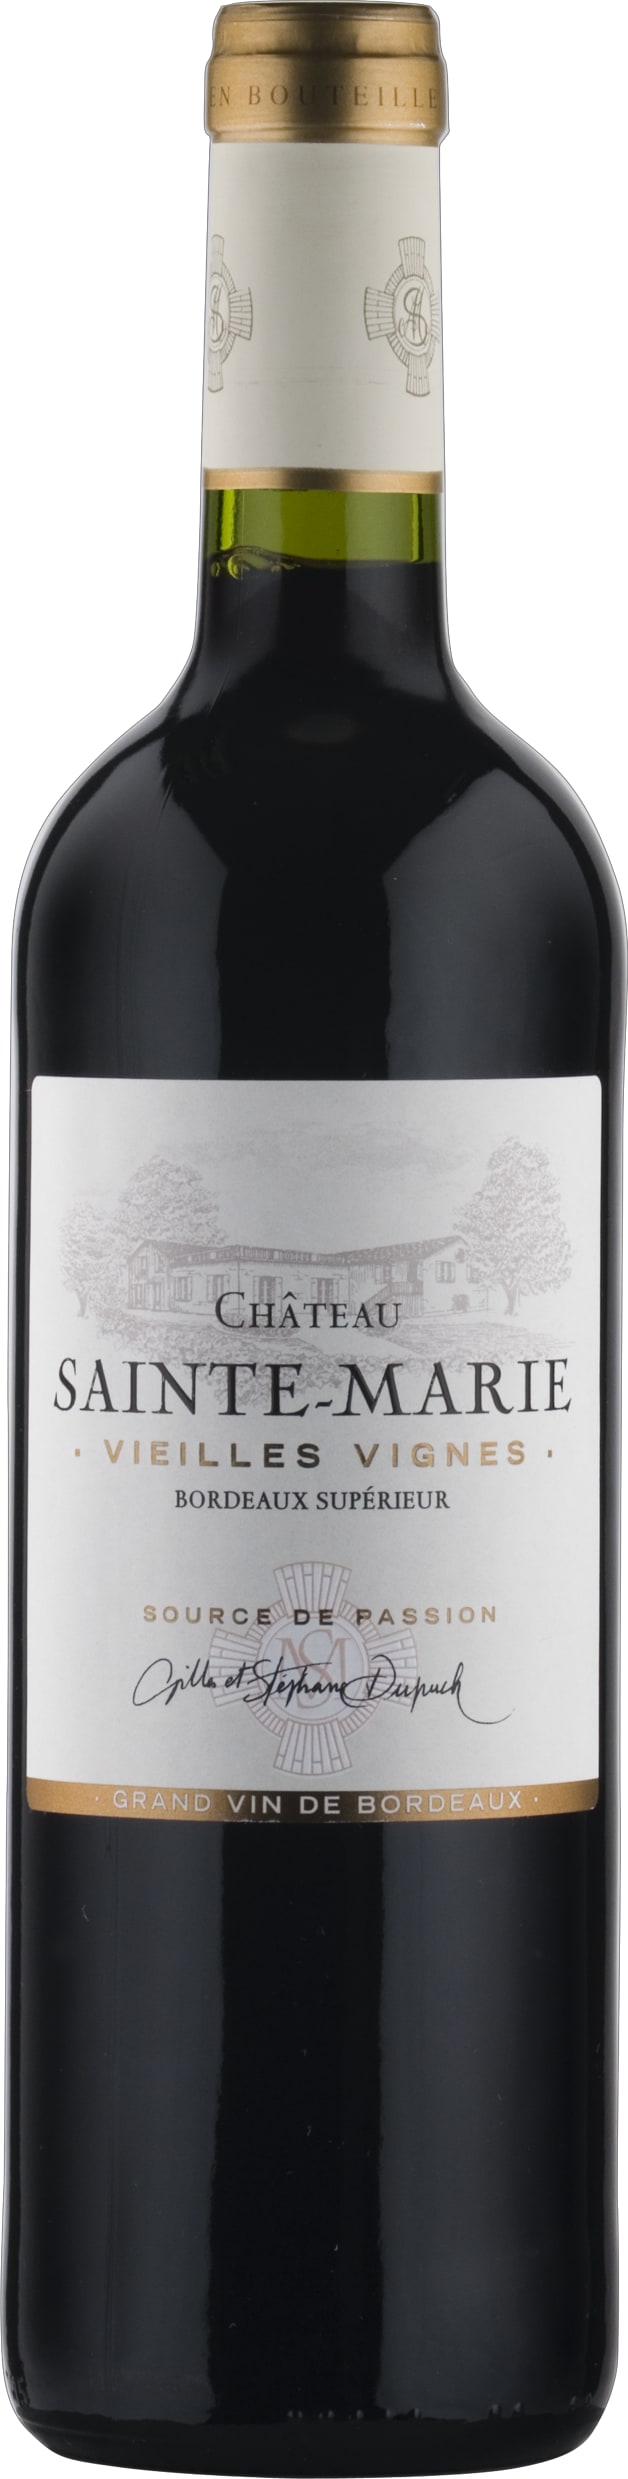 Chateau Sainte Marie Bordeaux Superieur 'Vieilles Vignes' 2022 75cl - Buy Chateau Sainte Marie Wines from GREAT WINES DIRECT wine shop